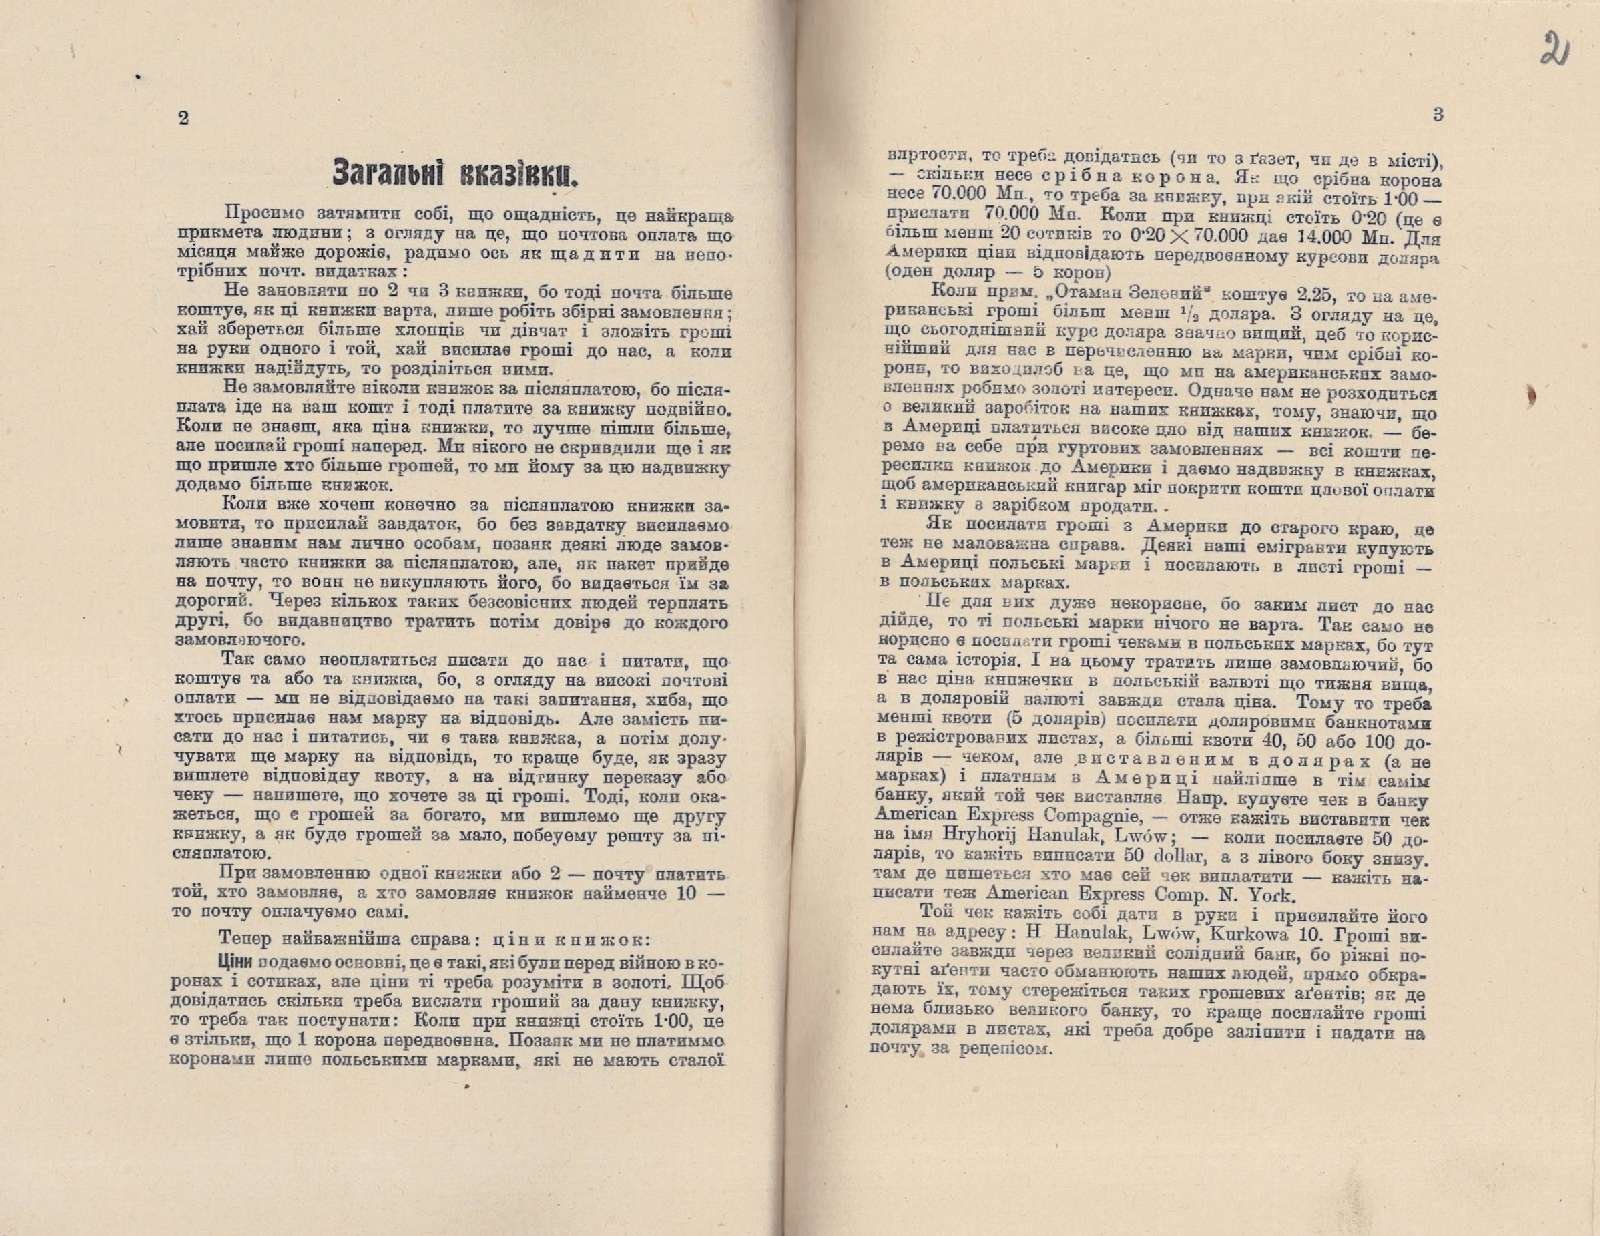 Ілюстрований каталог Видавництва «Русалка», м. Львів. 1924 р.